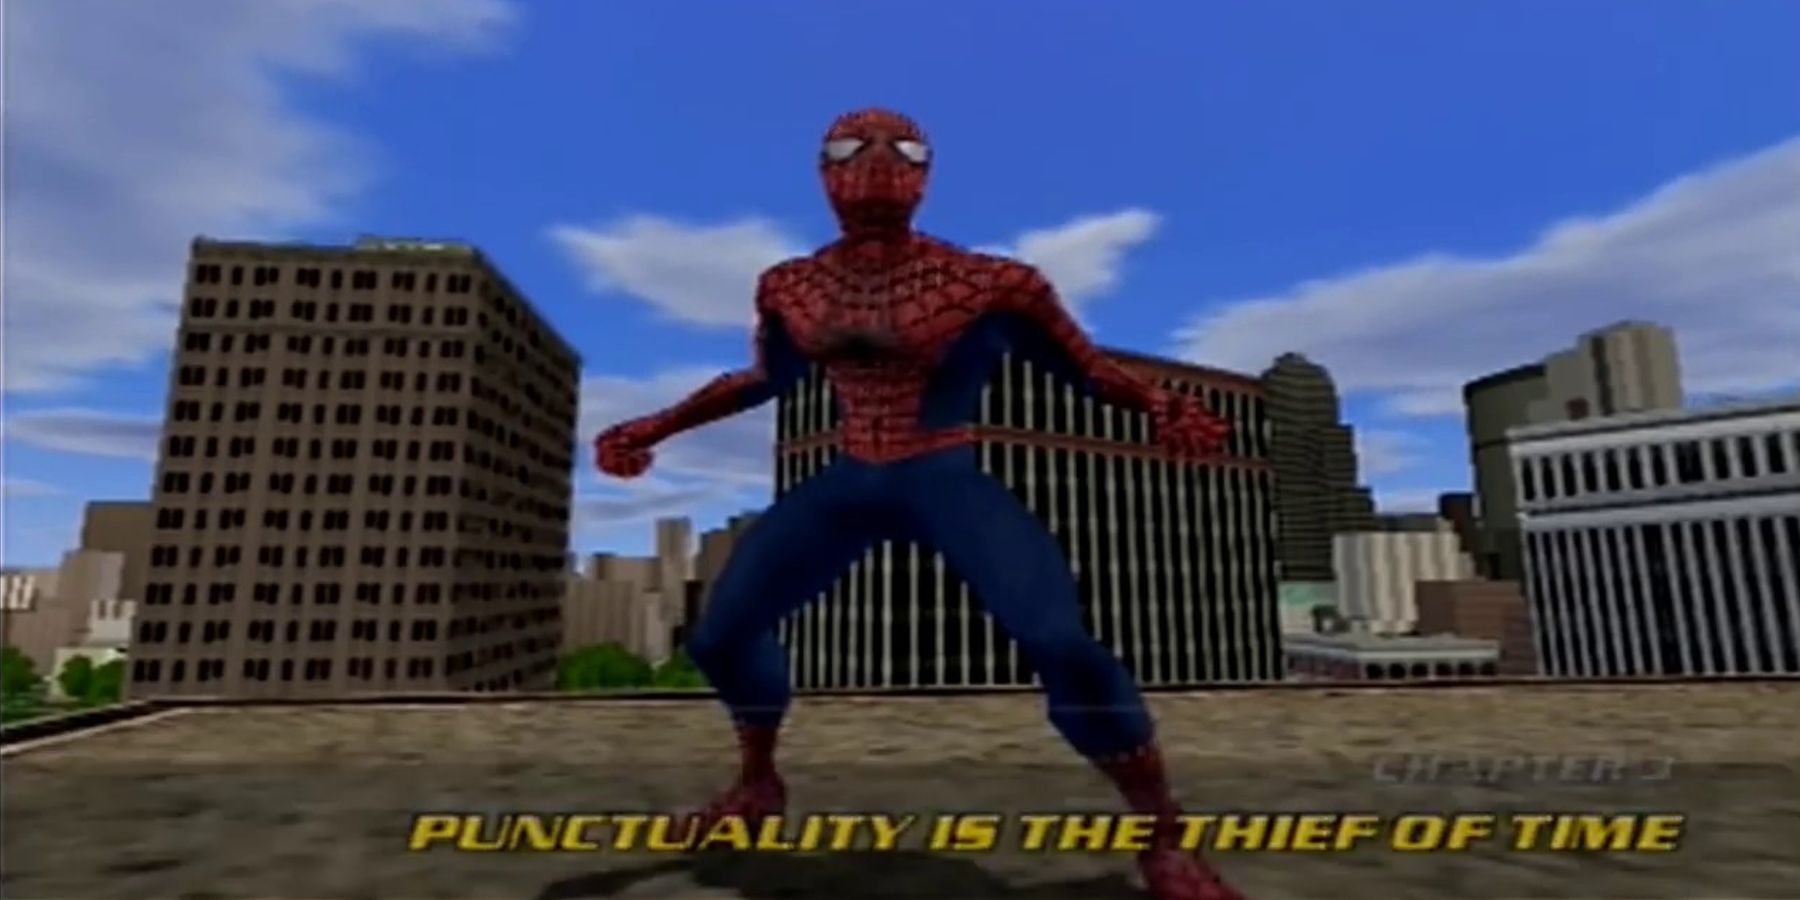 Spider-Man 2 - PlayStation 2